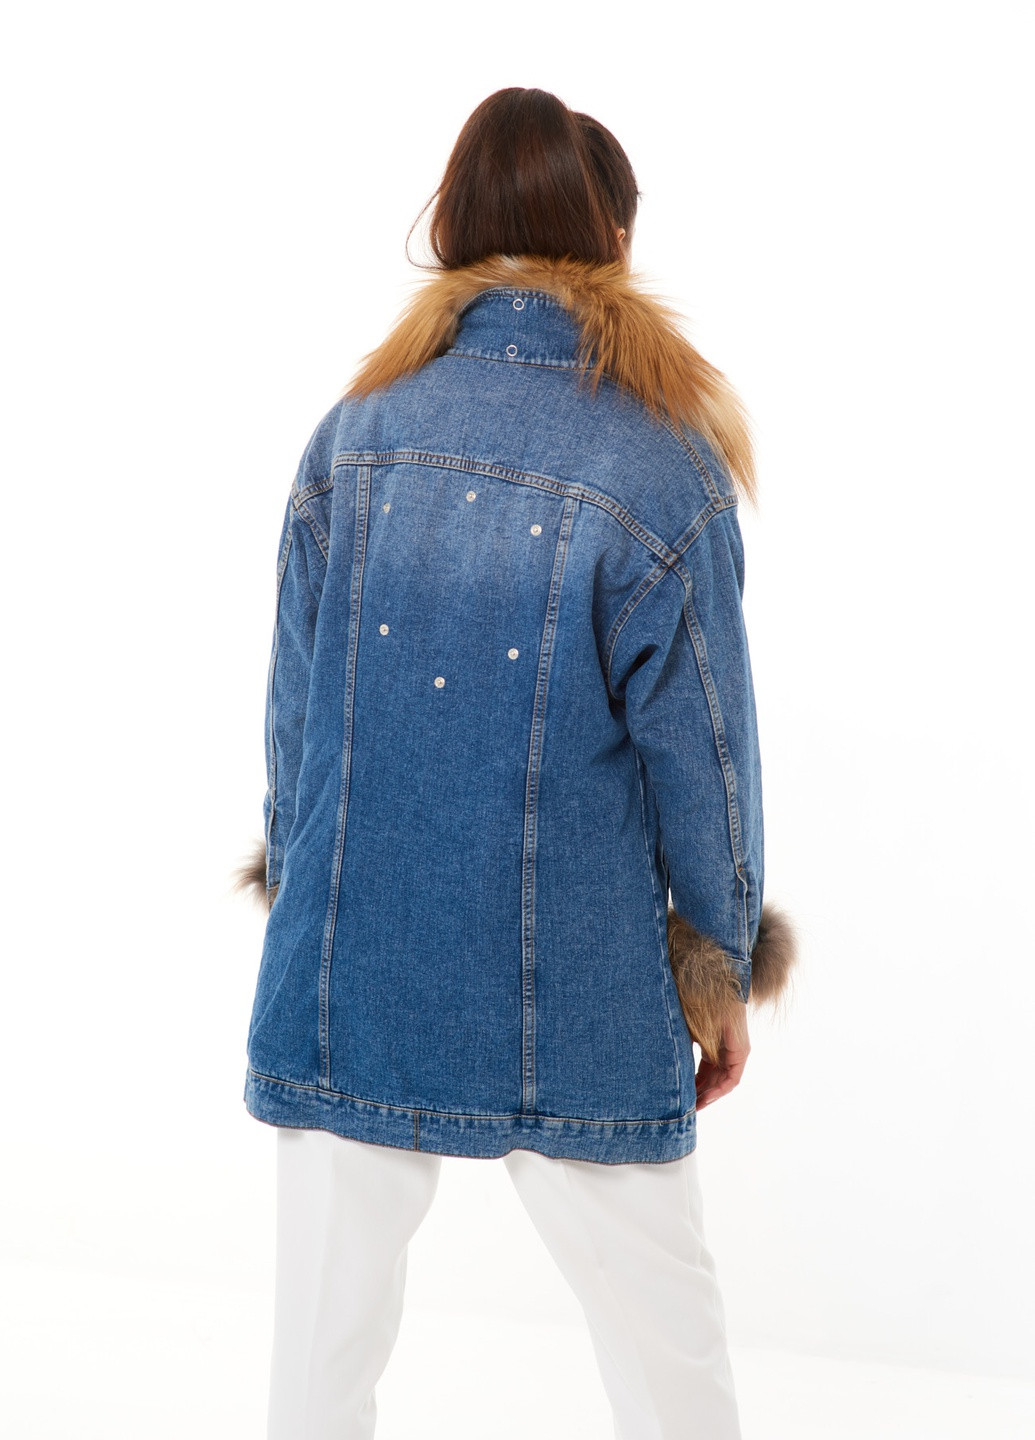 Синяя зимняя утепленная джинсовая куртка джинс деним с натуральным съемным мехом зима осень shea голубая vip gold fox Actors